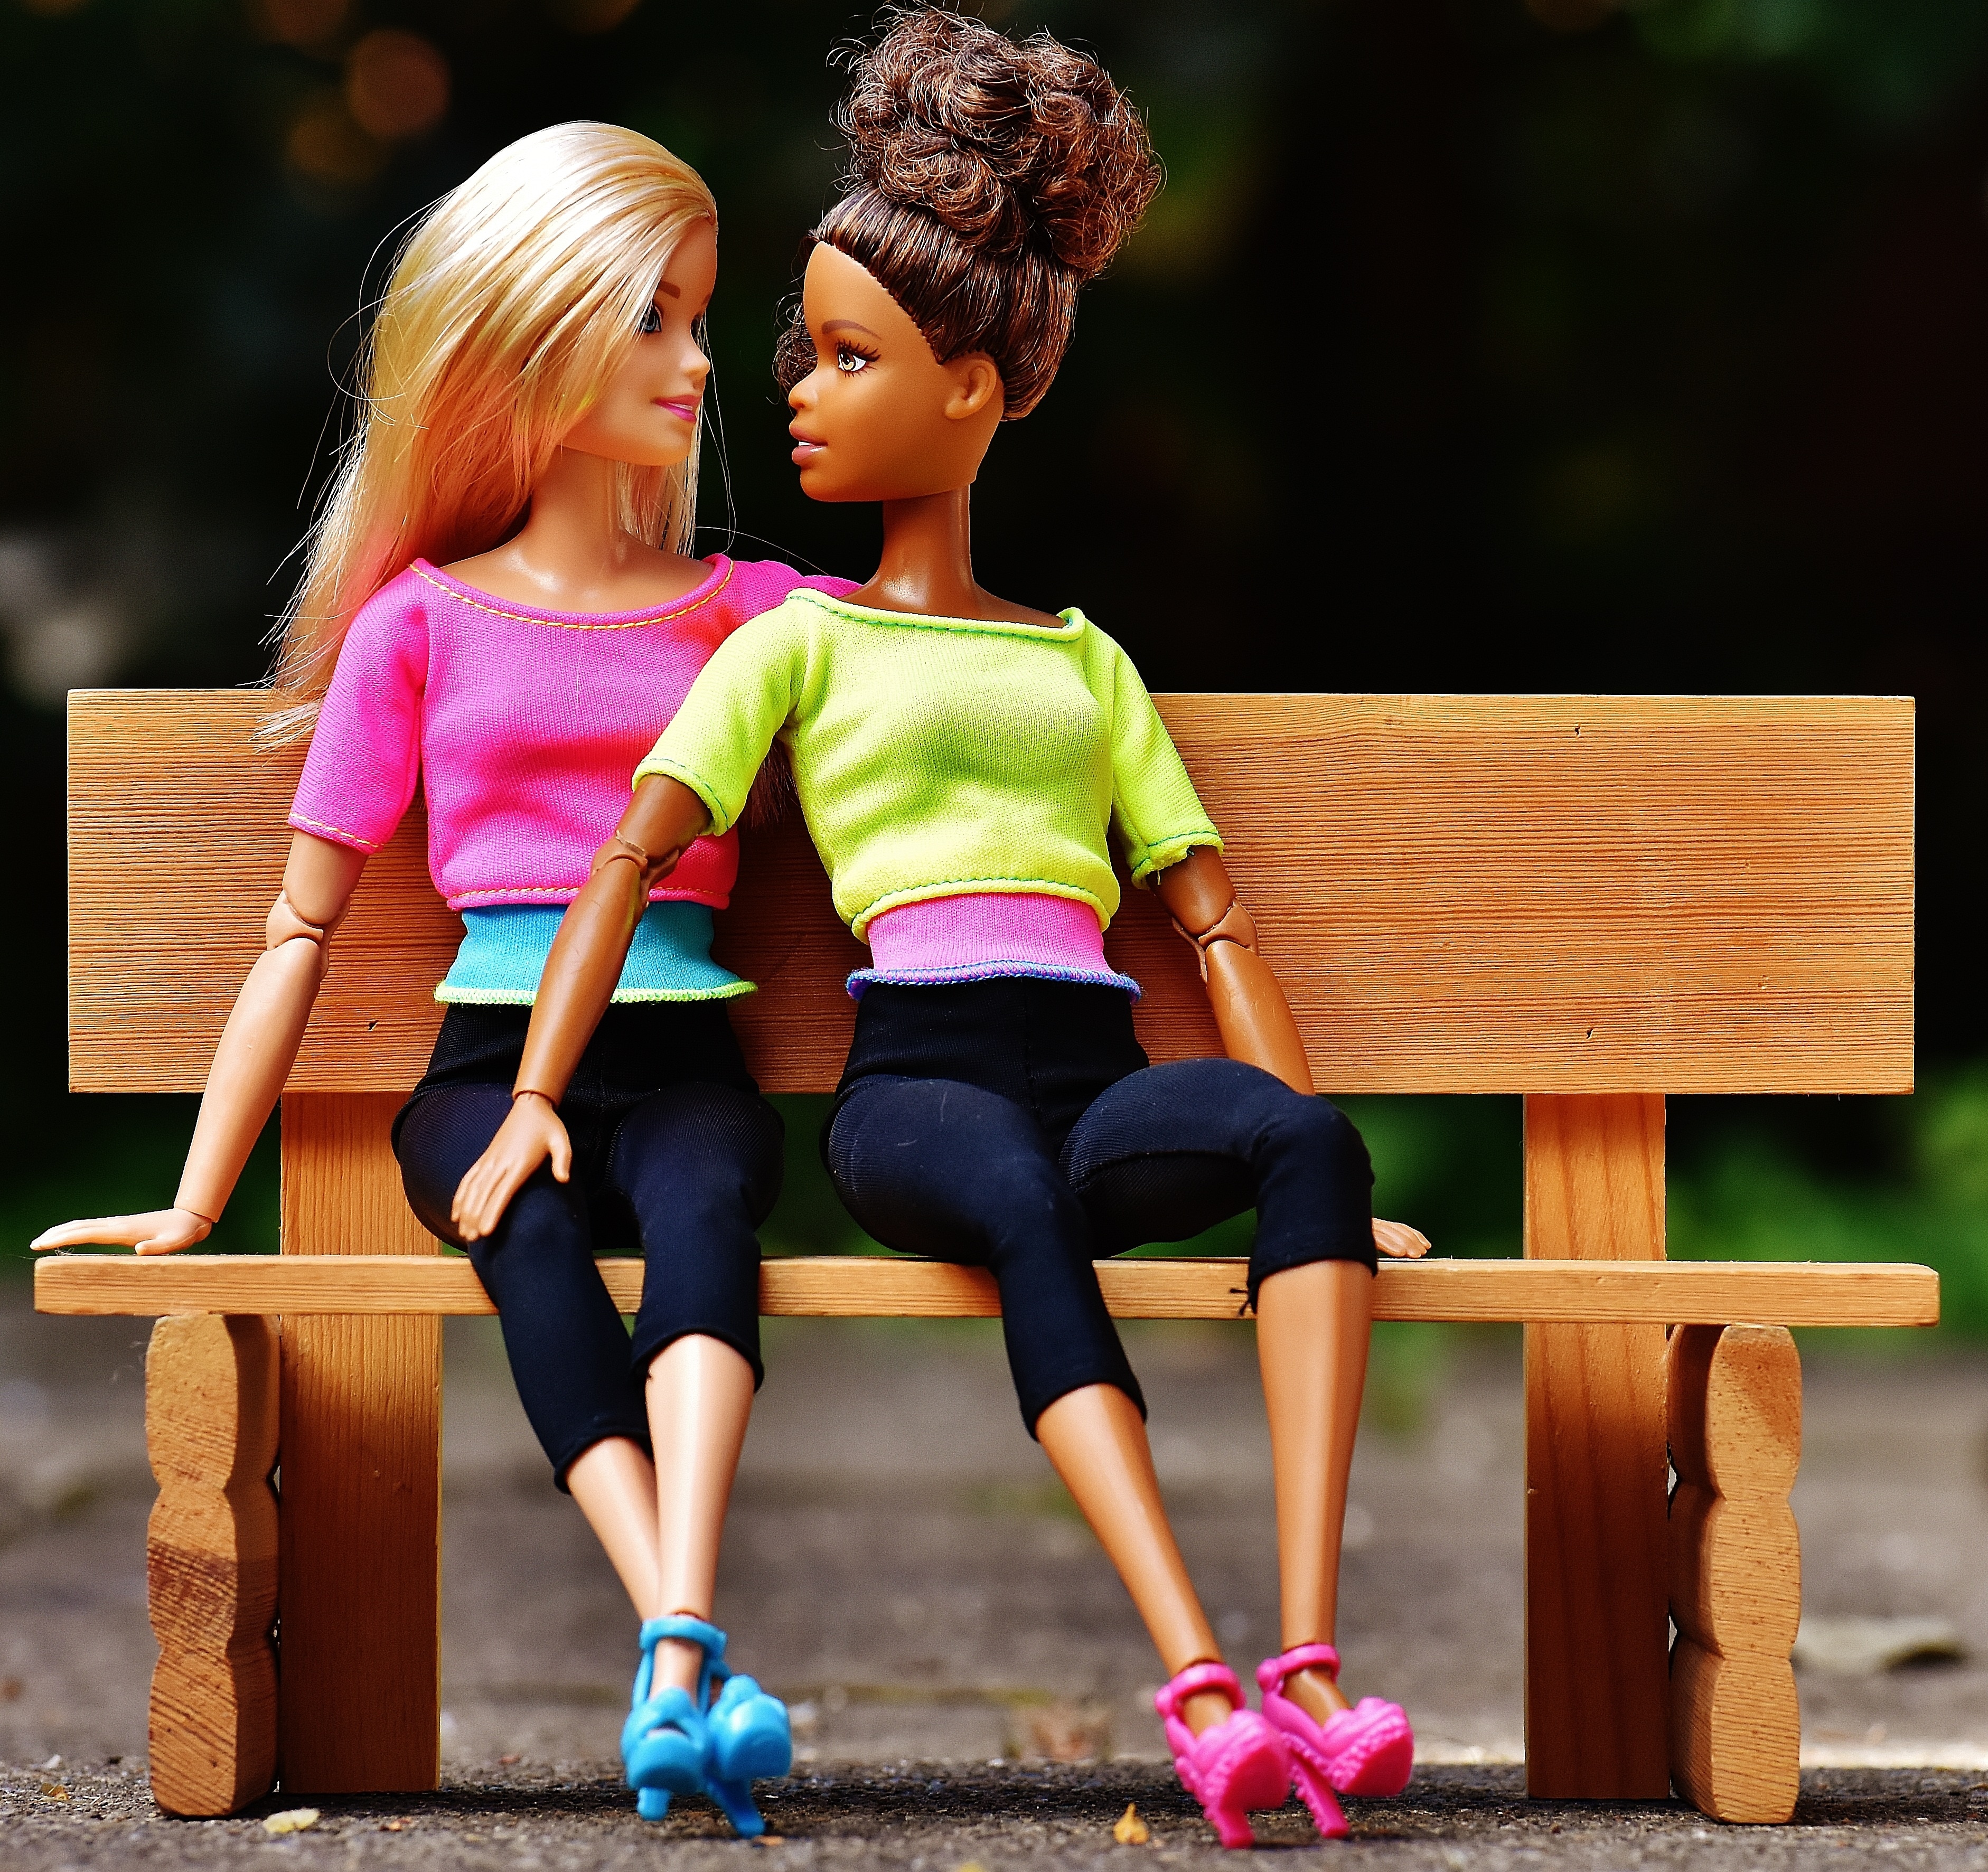 two barbie friends